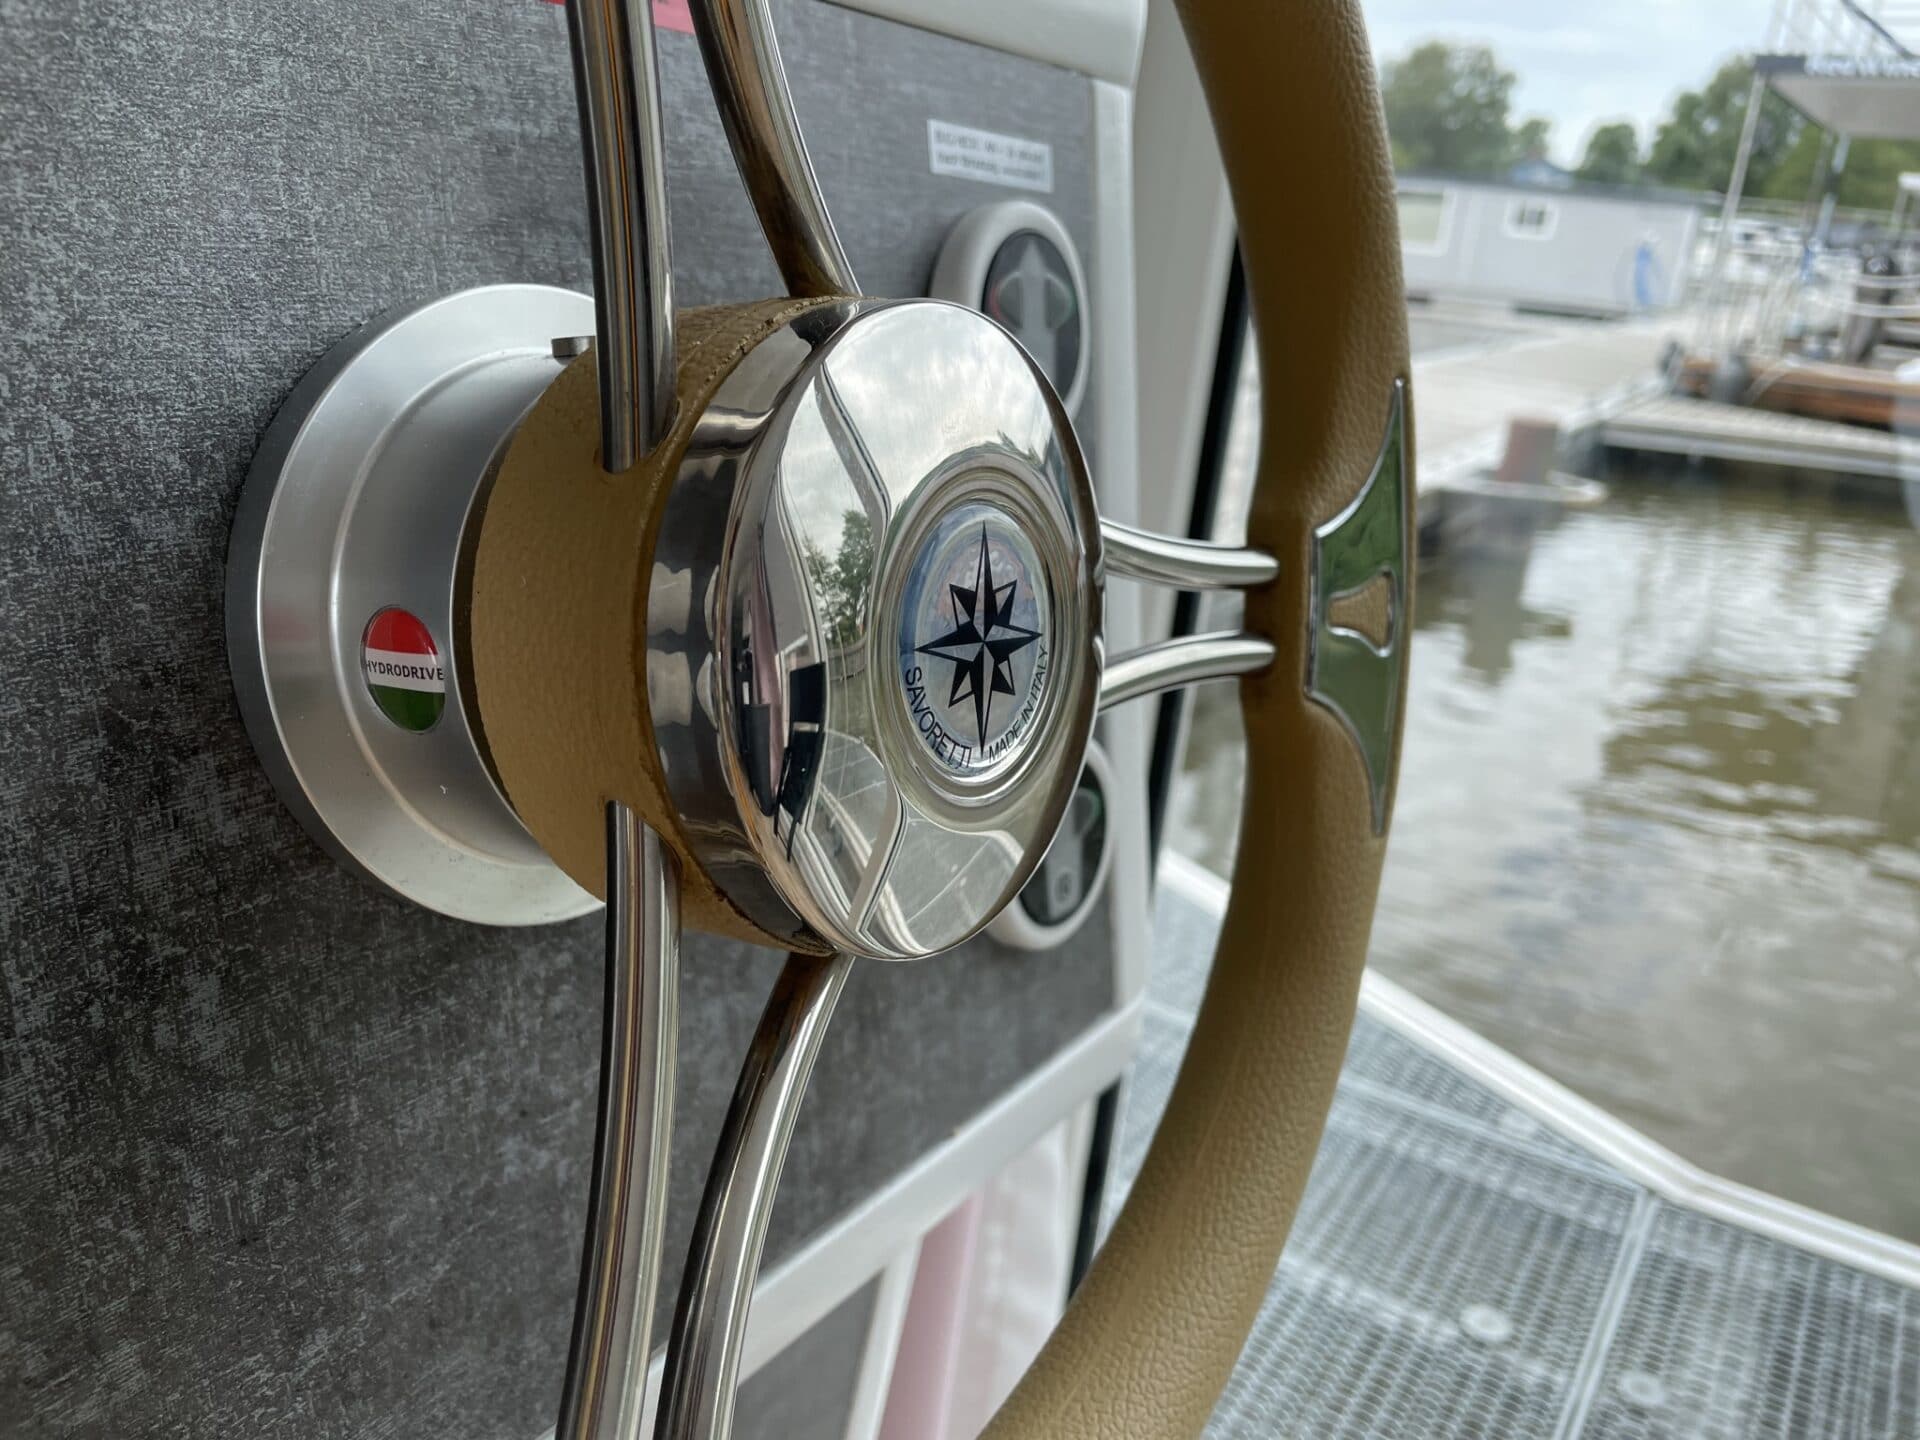 Hausboot mieten ohne Führerschein